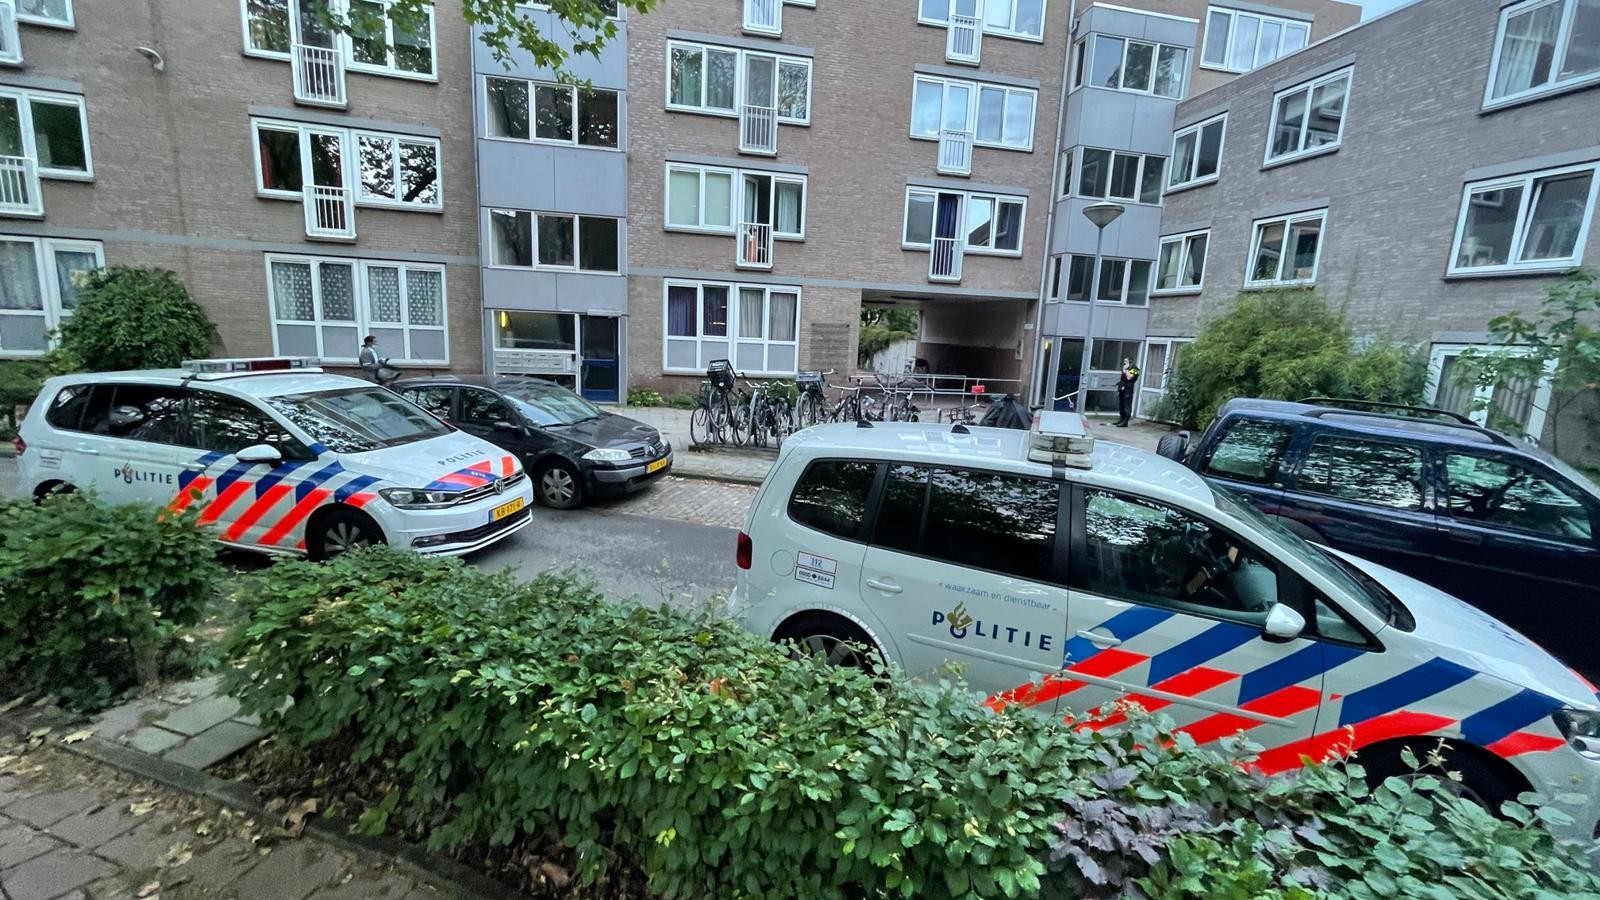 Drugswoning Van Hogendorpplein gesloten na schietpartij